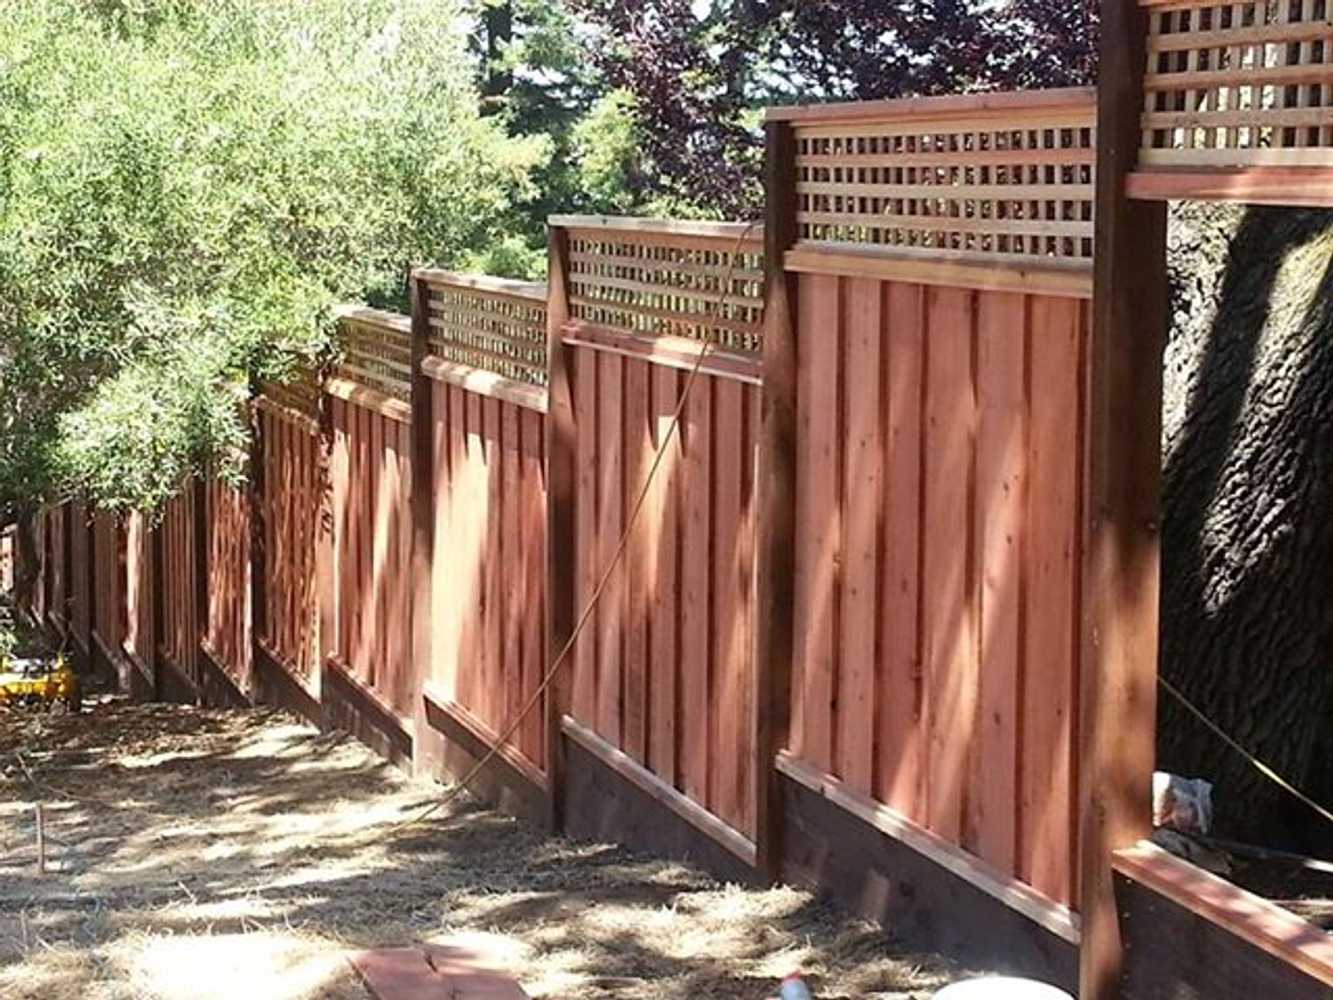 Los Gatos Fence Company Project